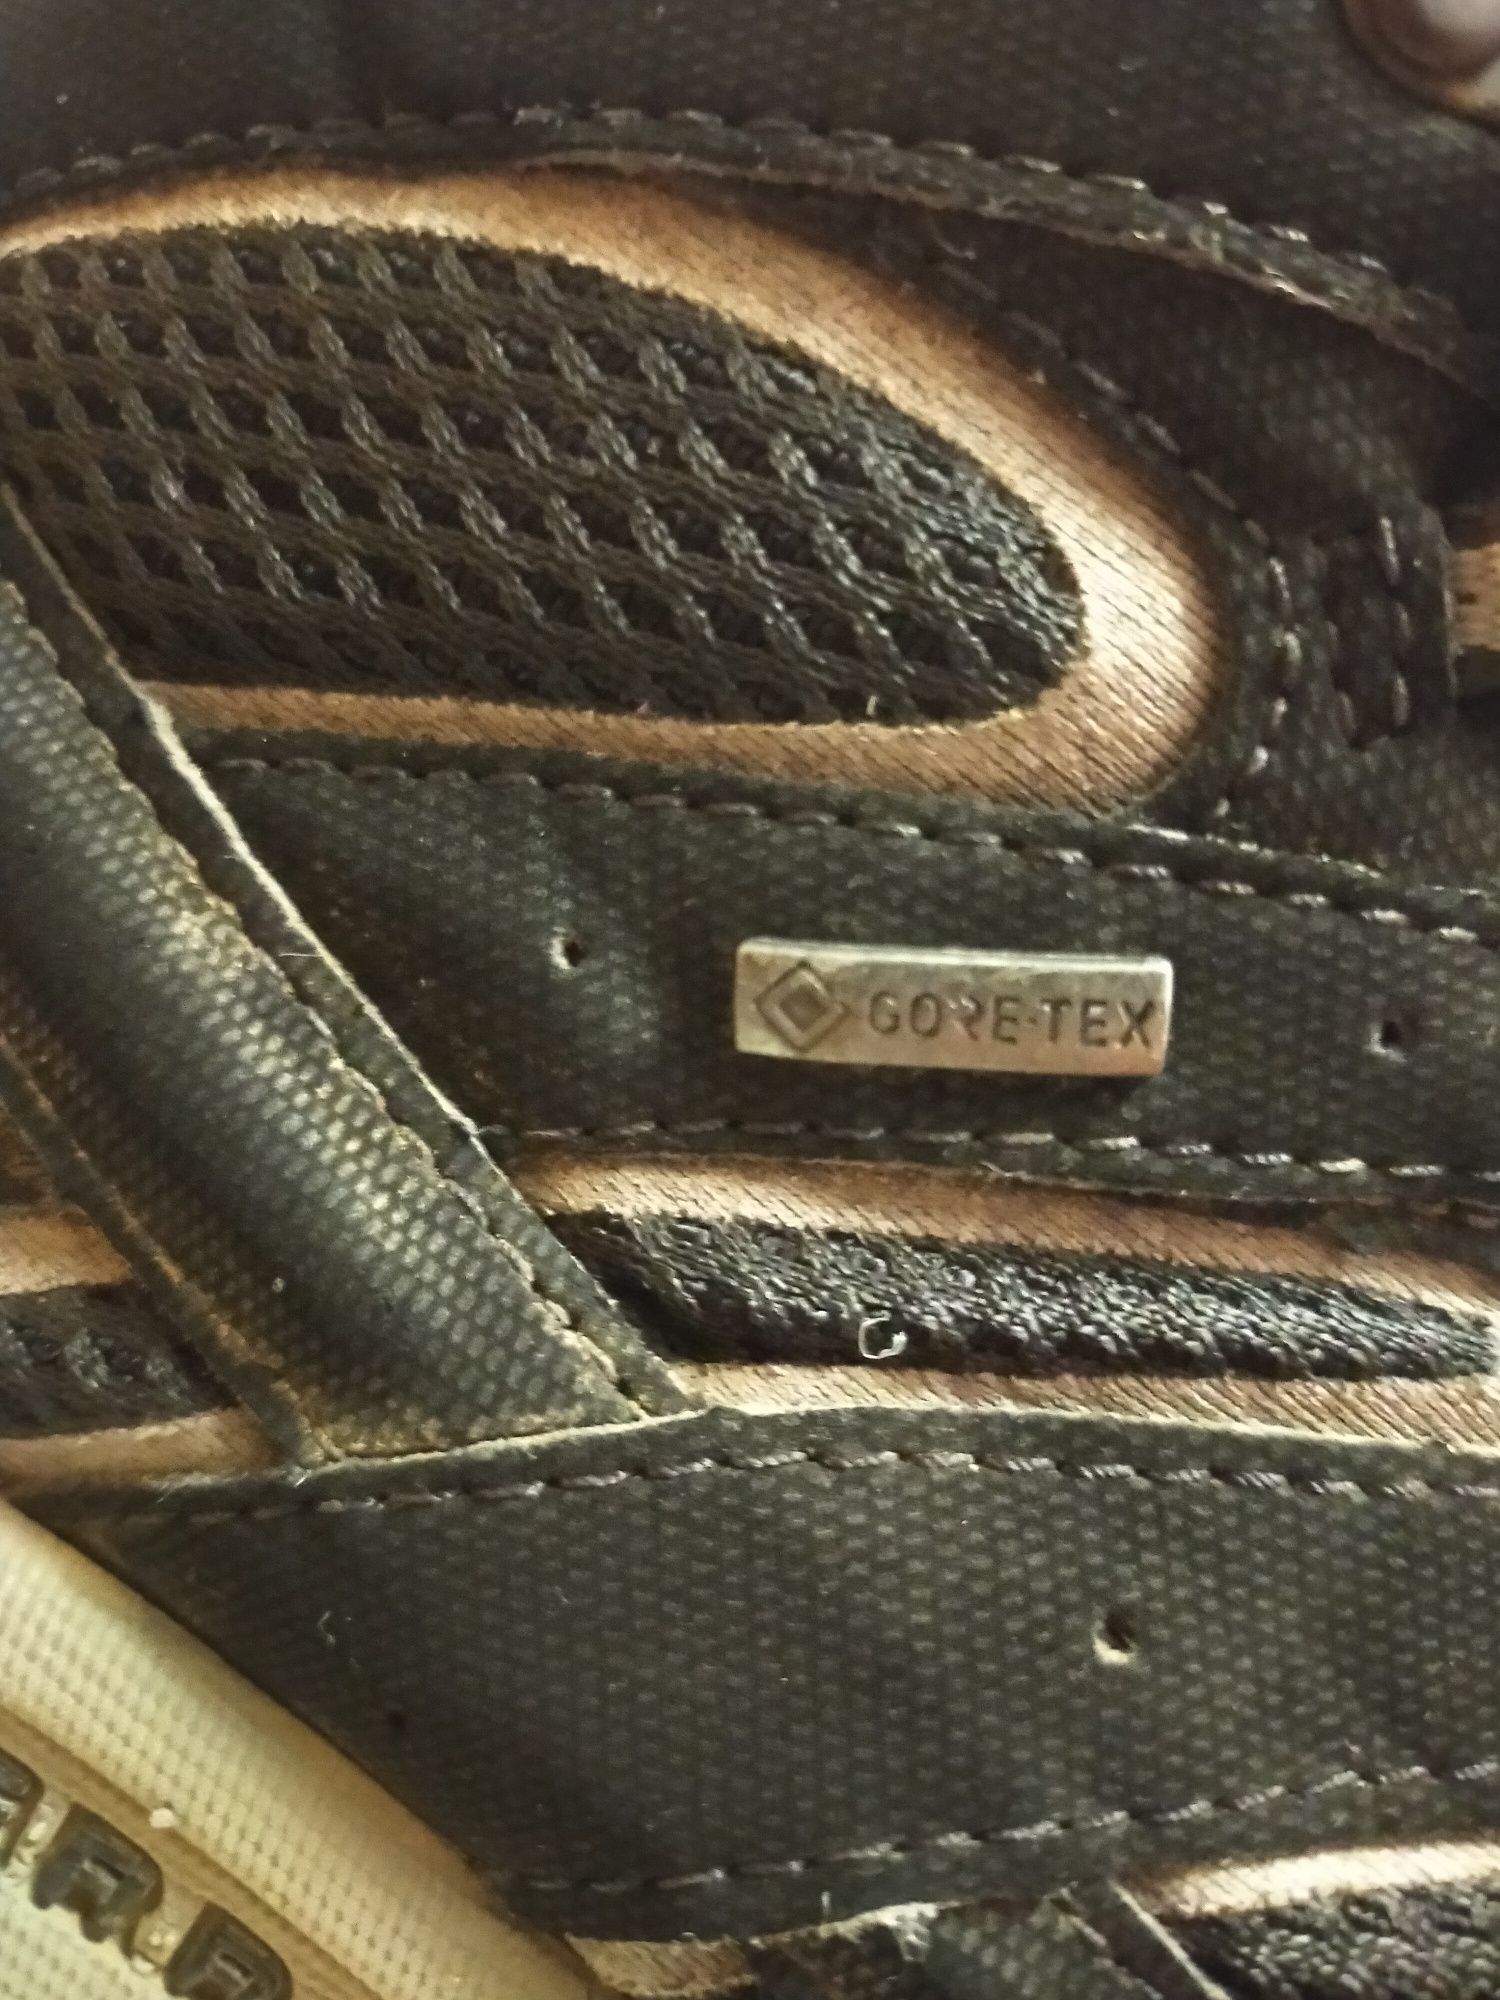 Ботинки Merrell Gore-tex мембрана трекинговые кроссовки